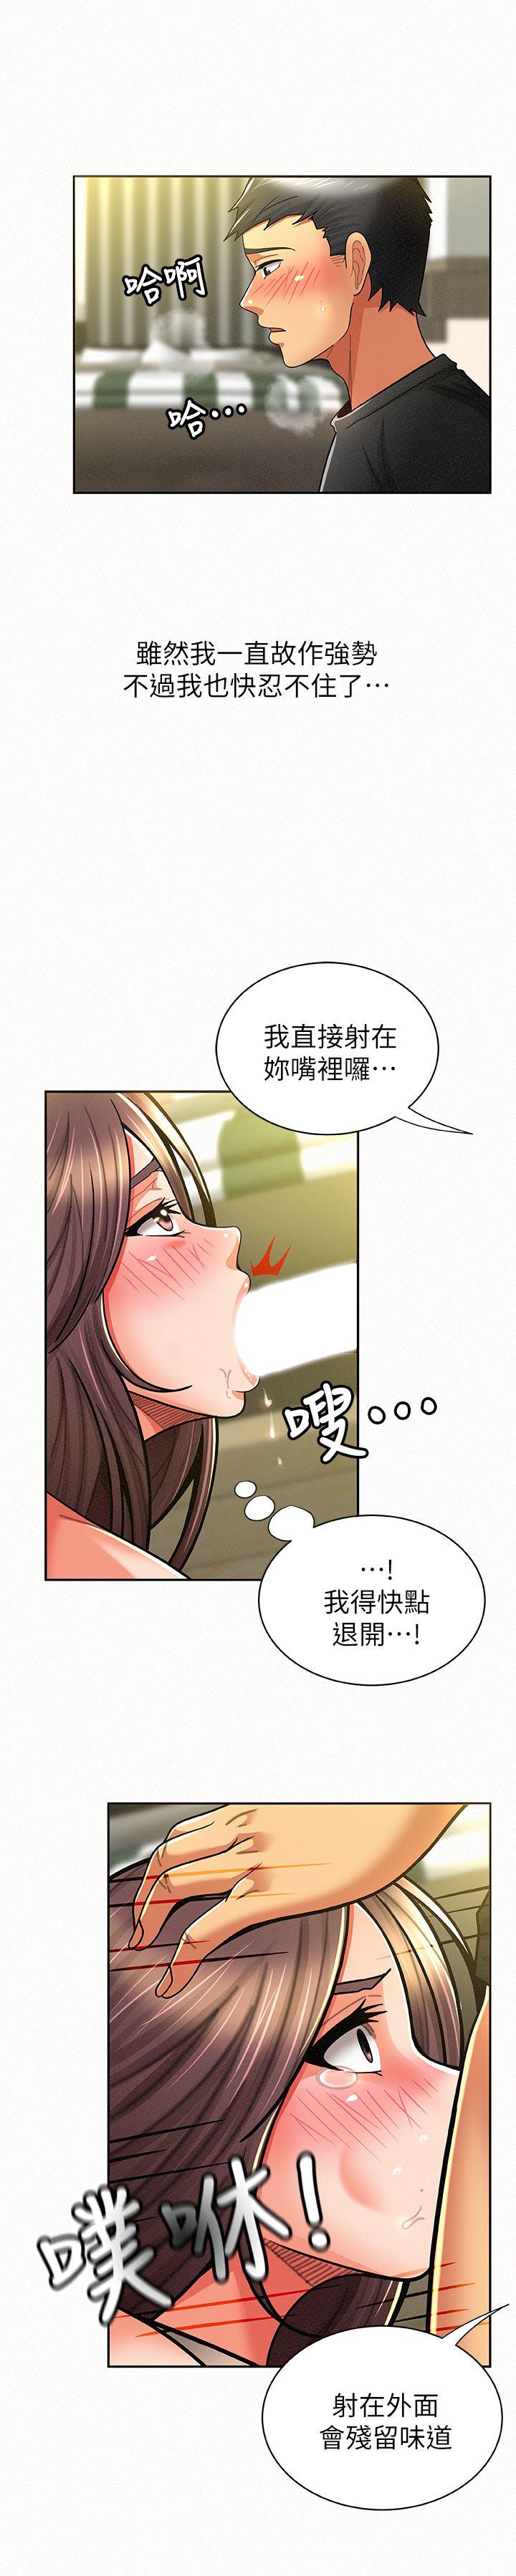 韩国污漫画 報告夫人 第10话-仁华的情色家教时间 27